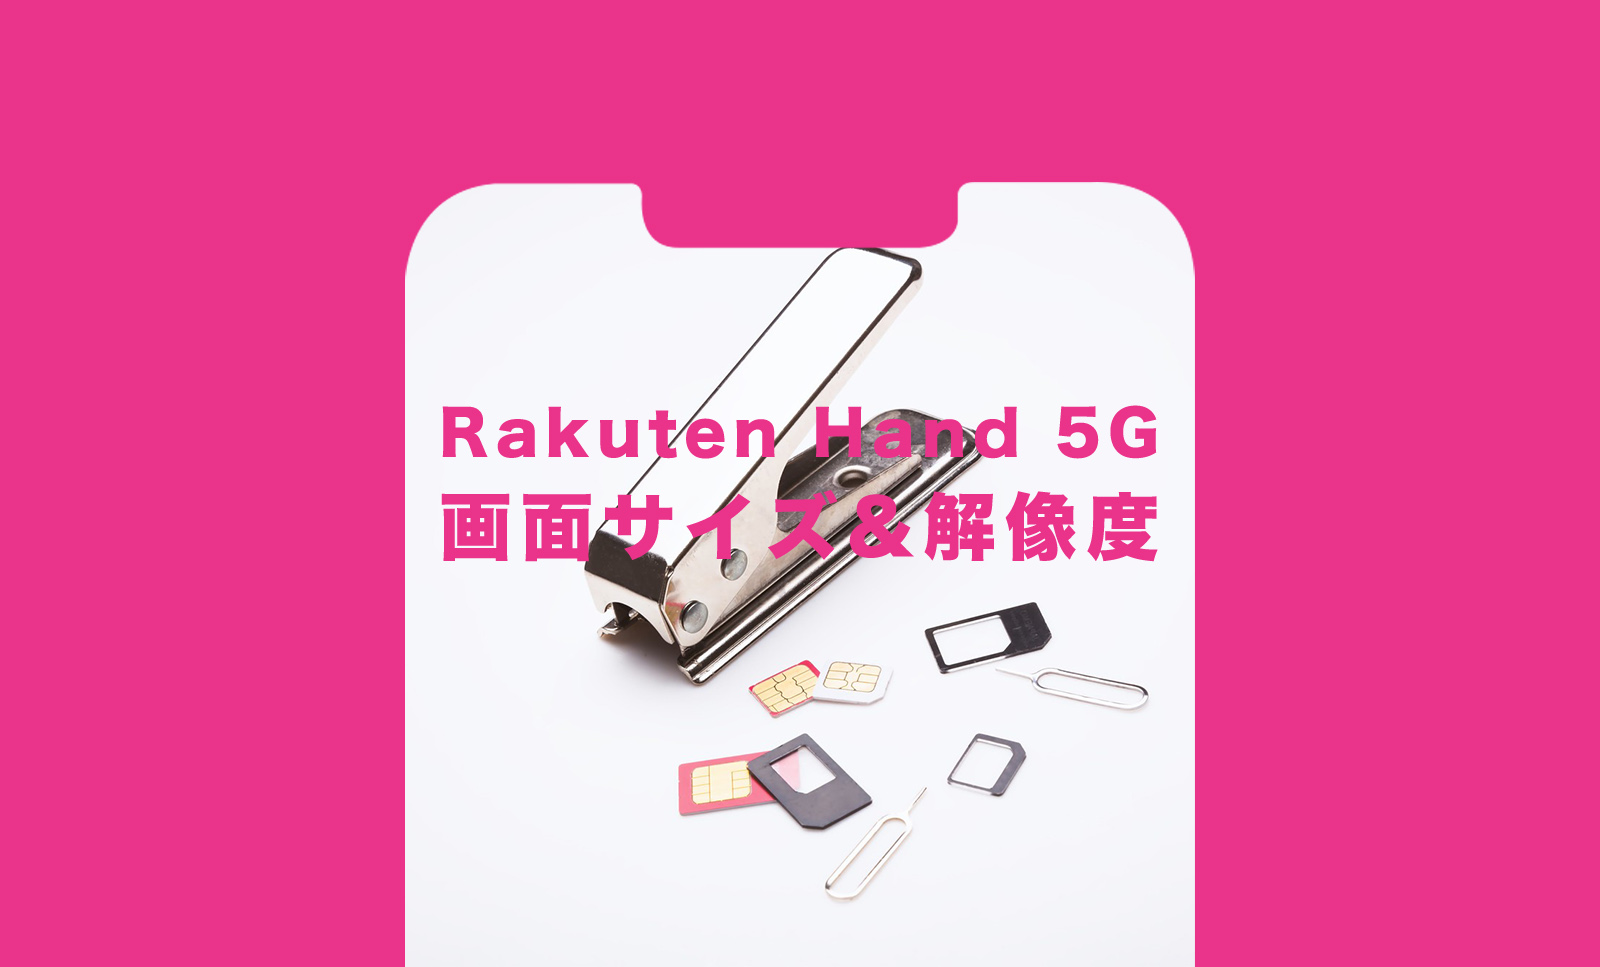 楽天ハンド5G(Rakuten Hand 5G)の大きさや重さ&画面サイズや解像度は？のサムネイル画像